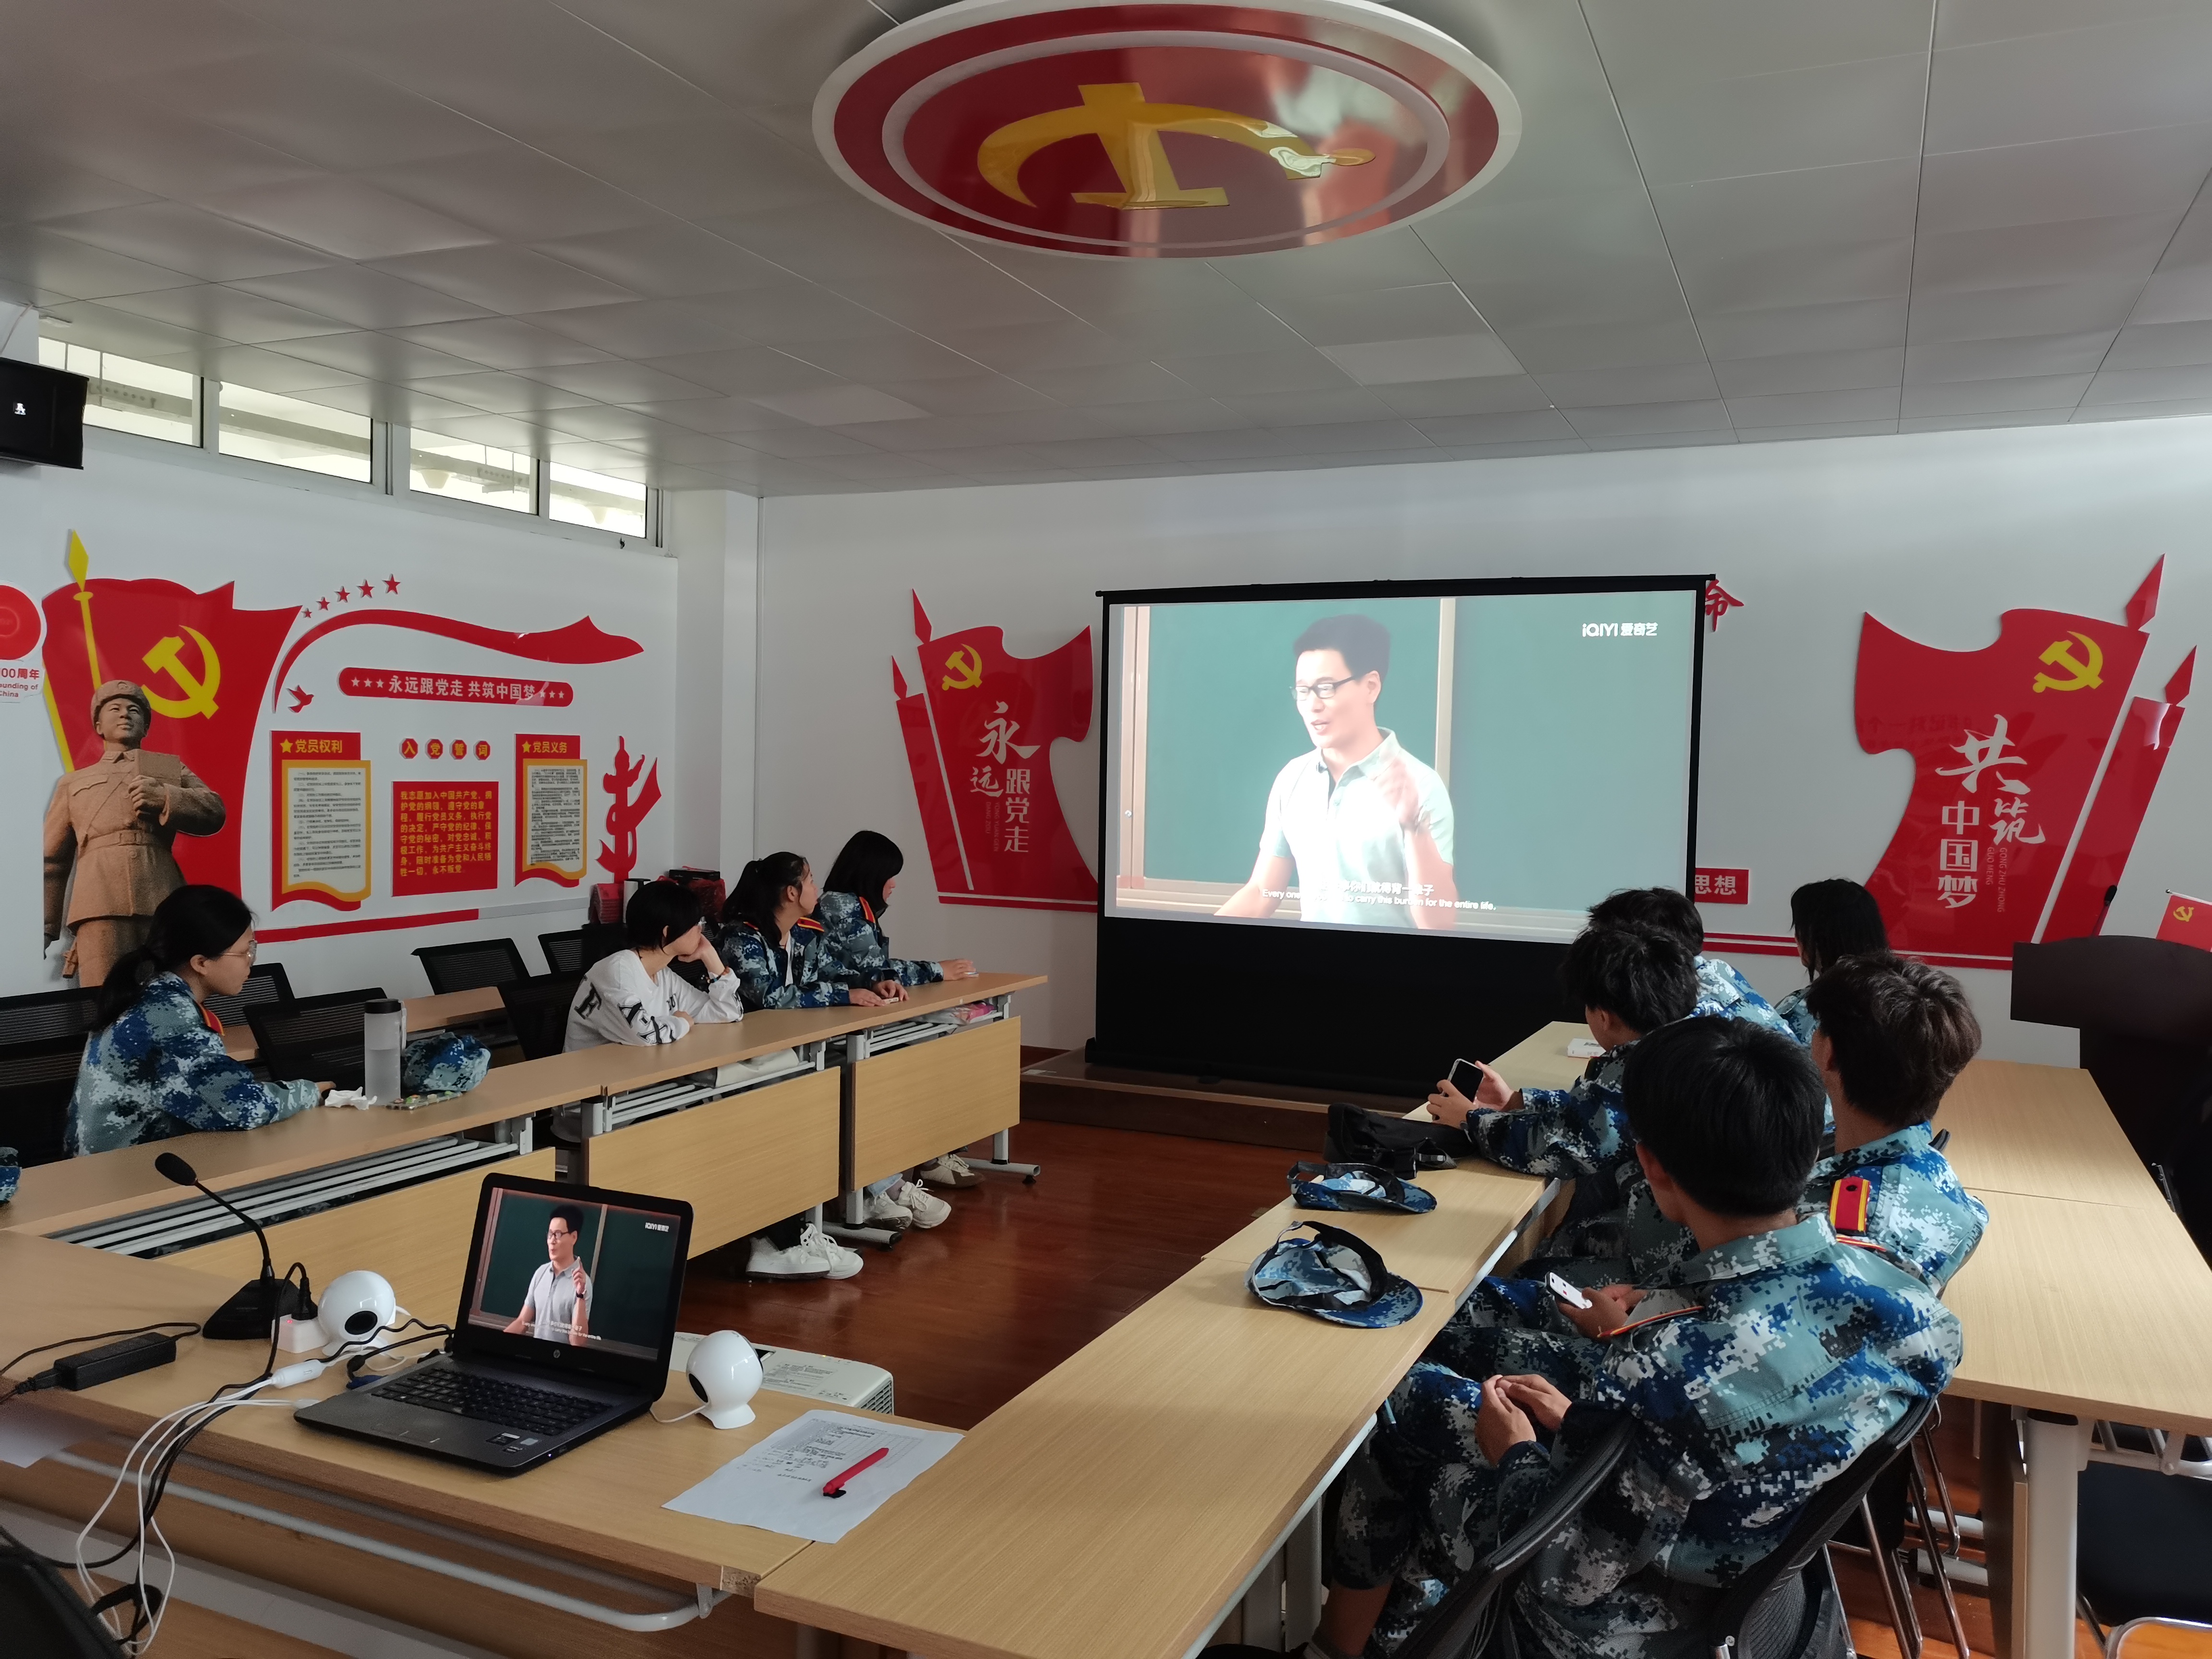 组织师生观看根据深圳外国语学校真实事件改编的教育题材电影《再见十八班》。